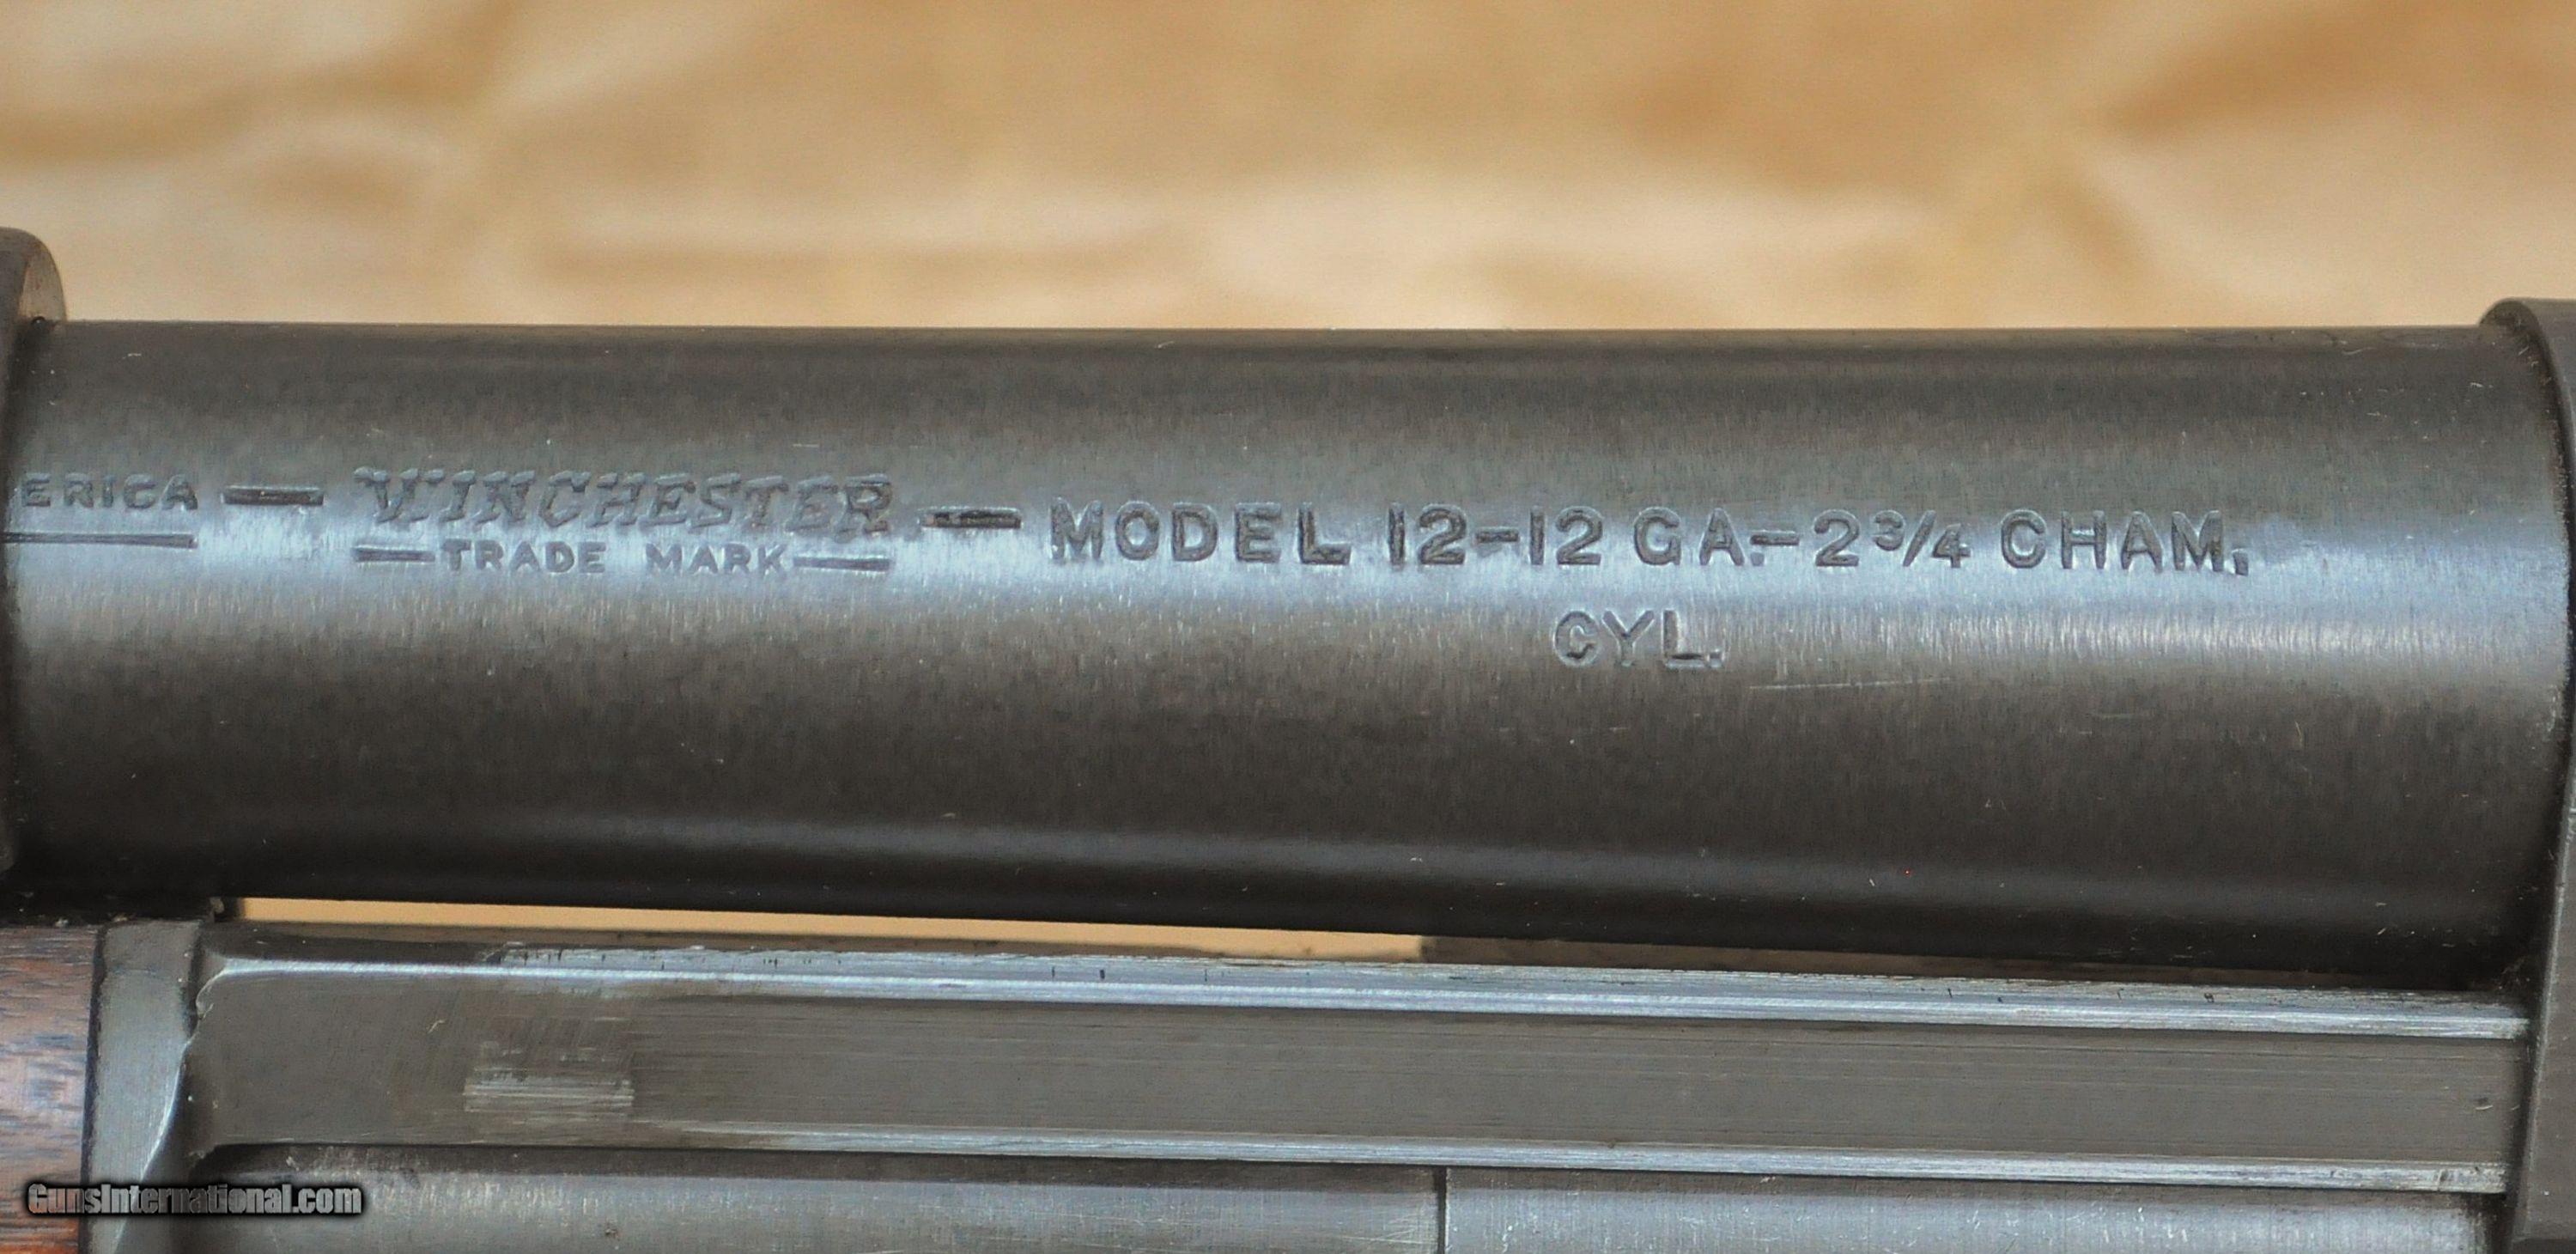 按 美 军 合 同 生 产 的 温 彻 斯 特 12 型 的 机 匣 上 有"U.S."字 样 和 小 炸 弹 图 案... 